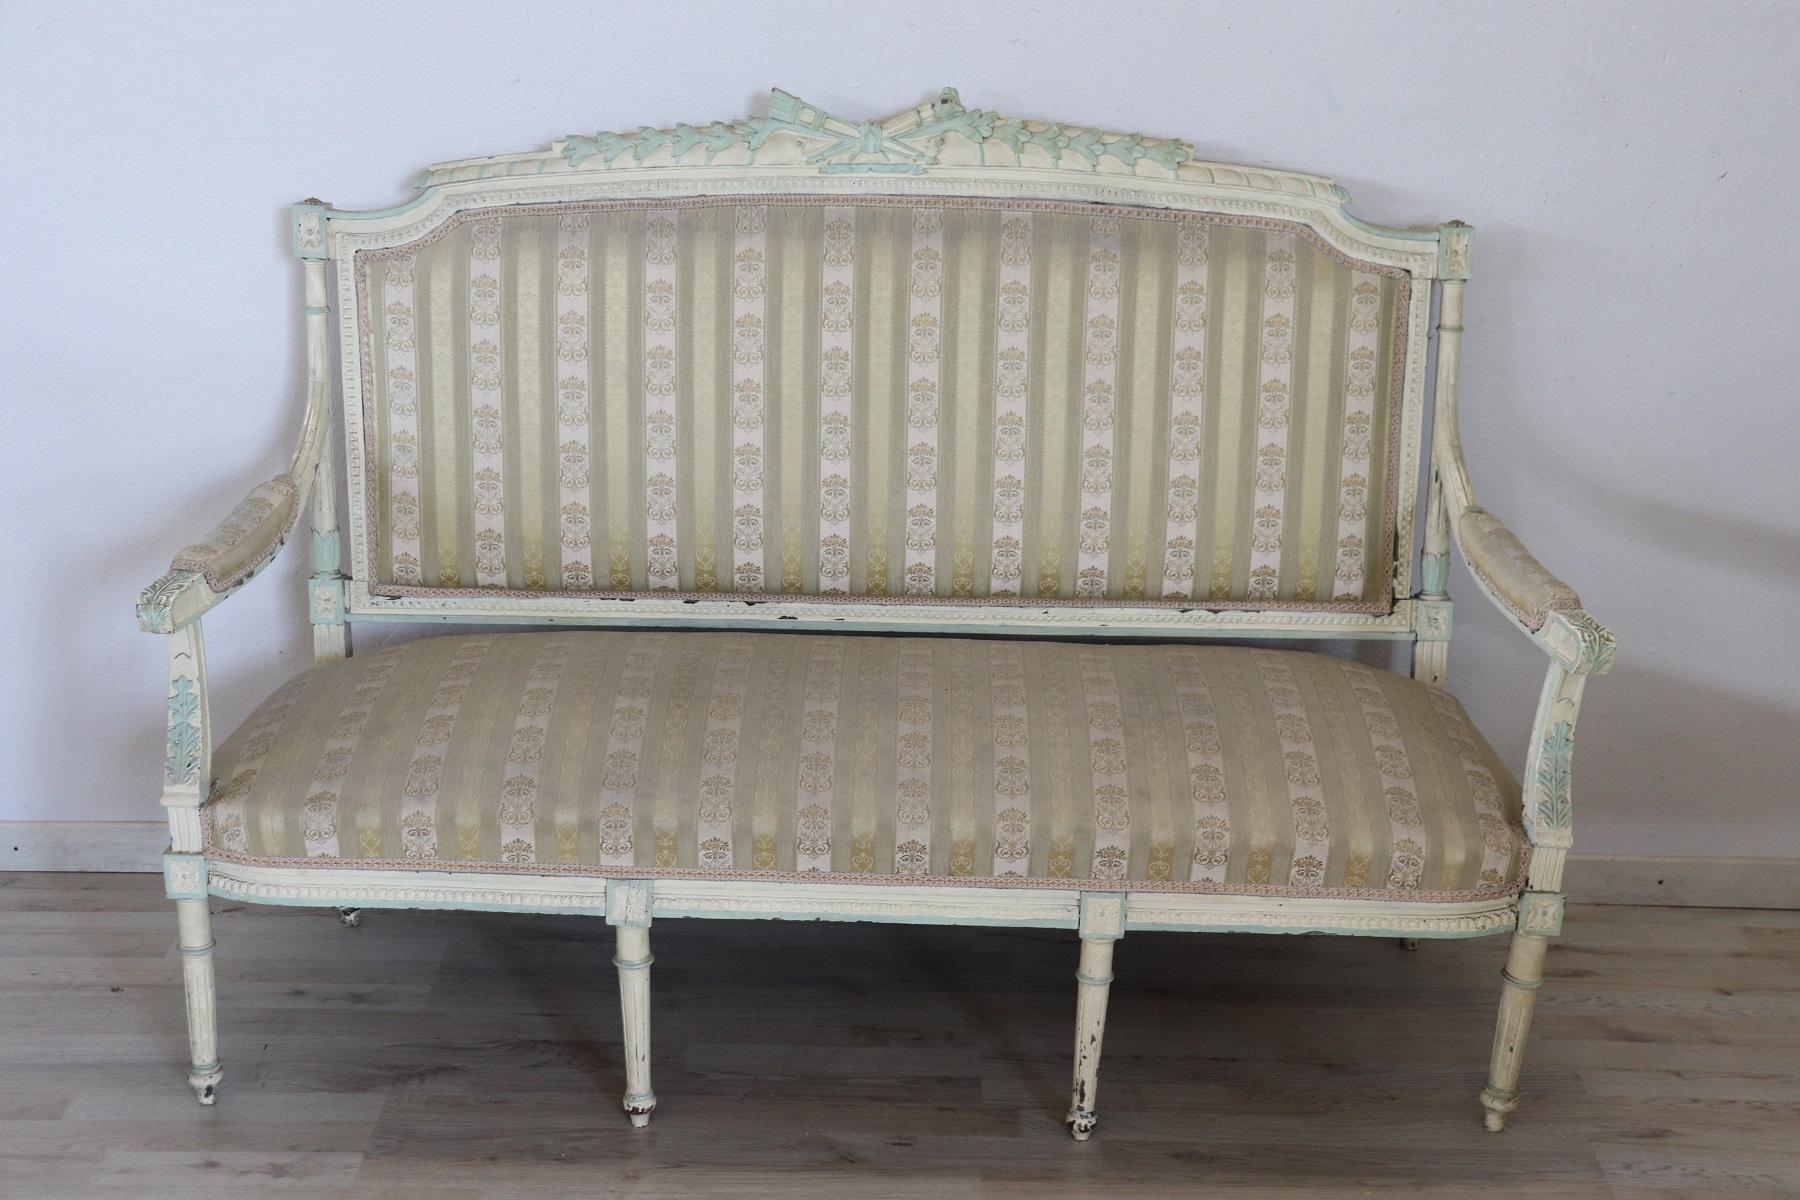 Rare ensemble complet de salon de luxe italien de style Louis XVI comprenant :
1 grand canapé
2 fauteuils
4 chaises
Ensemble de salon raffiné en bois laqué. Le salon provient d'une importante villa italienne et embellit le hall central dédié à